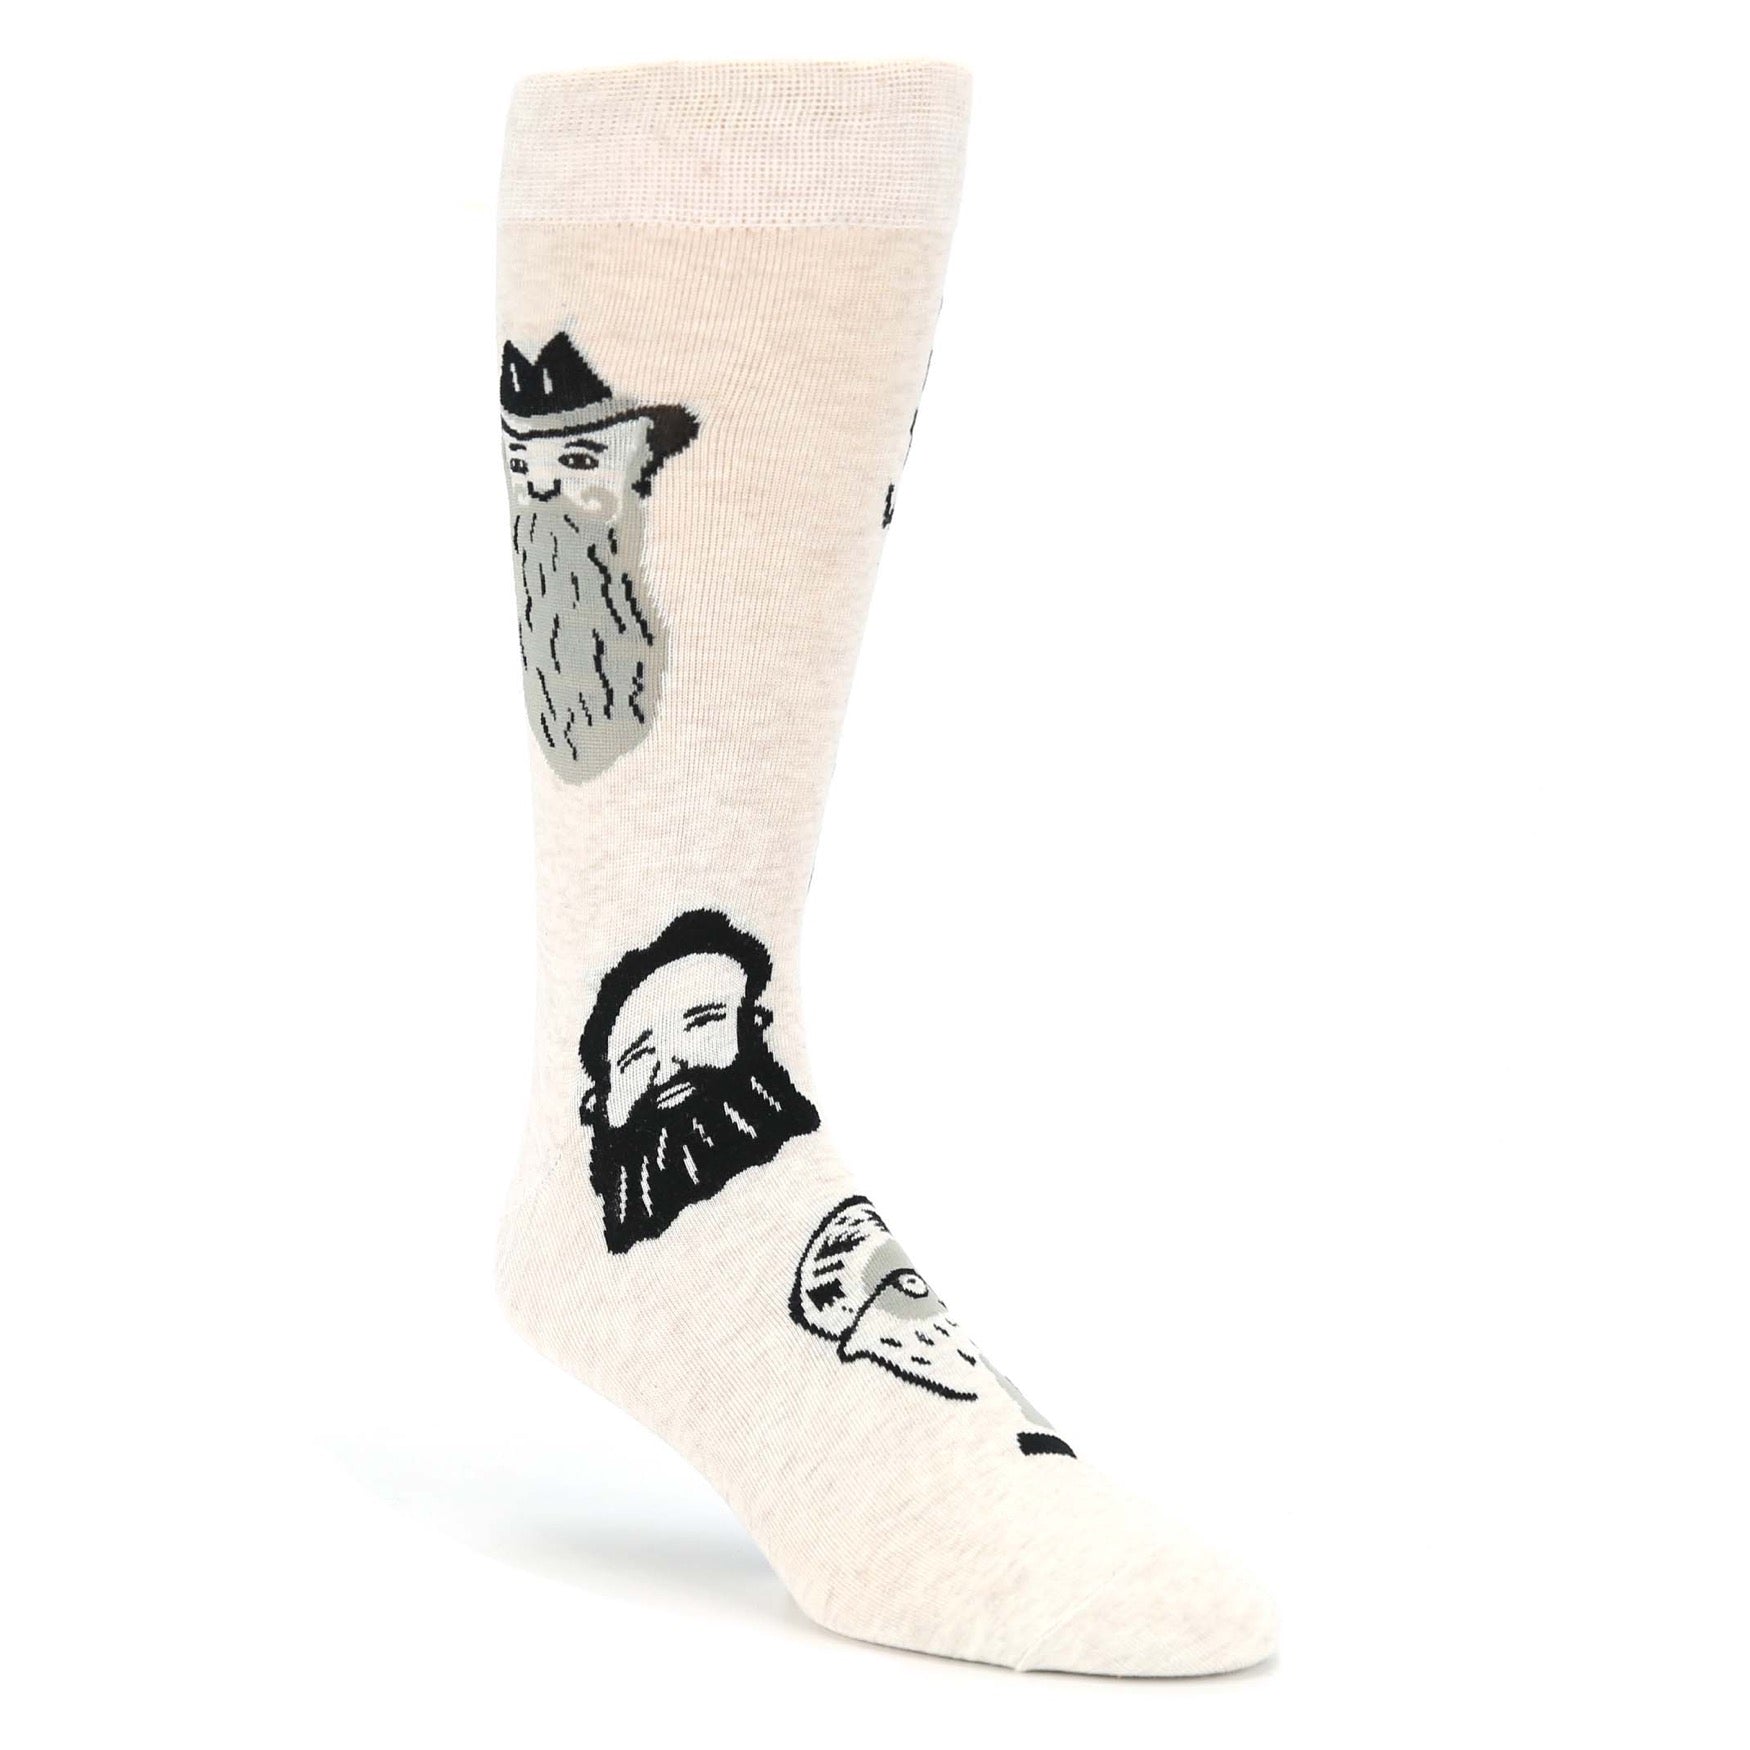 Beard Socks - Novelty Dress Socks for Men